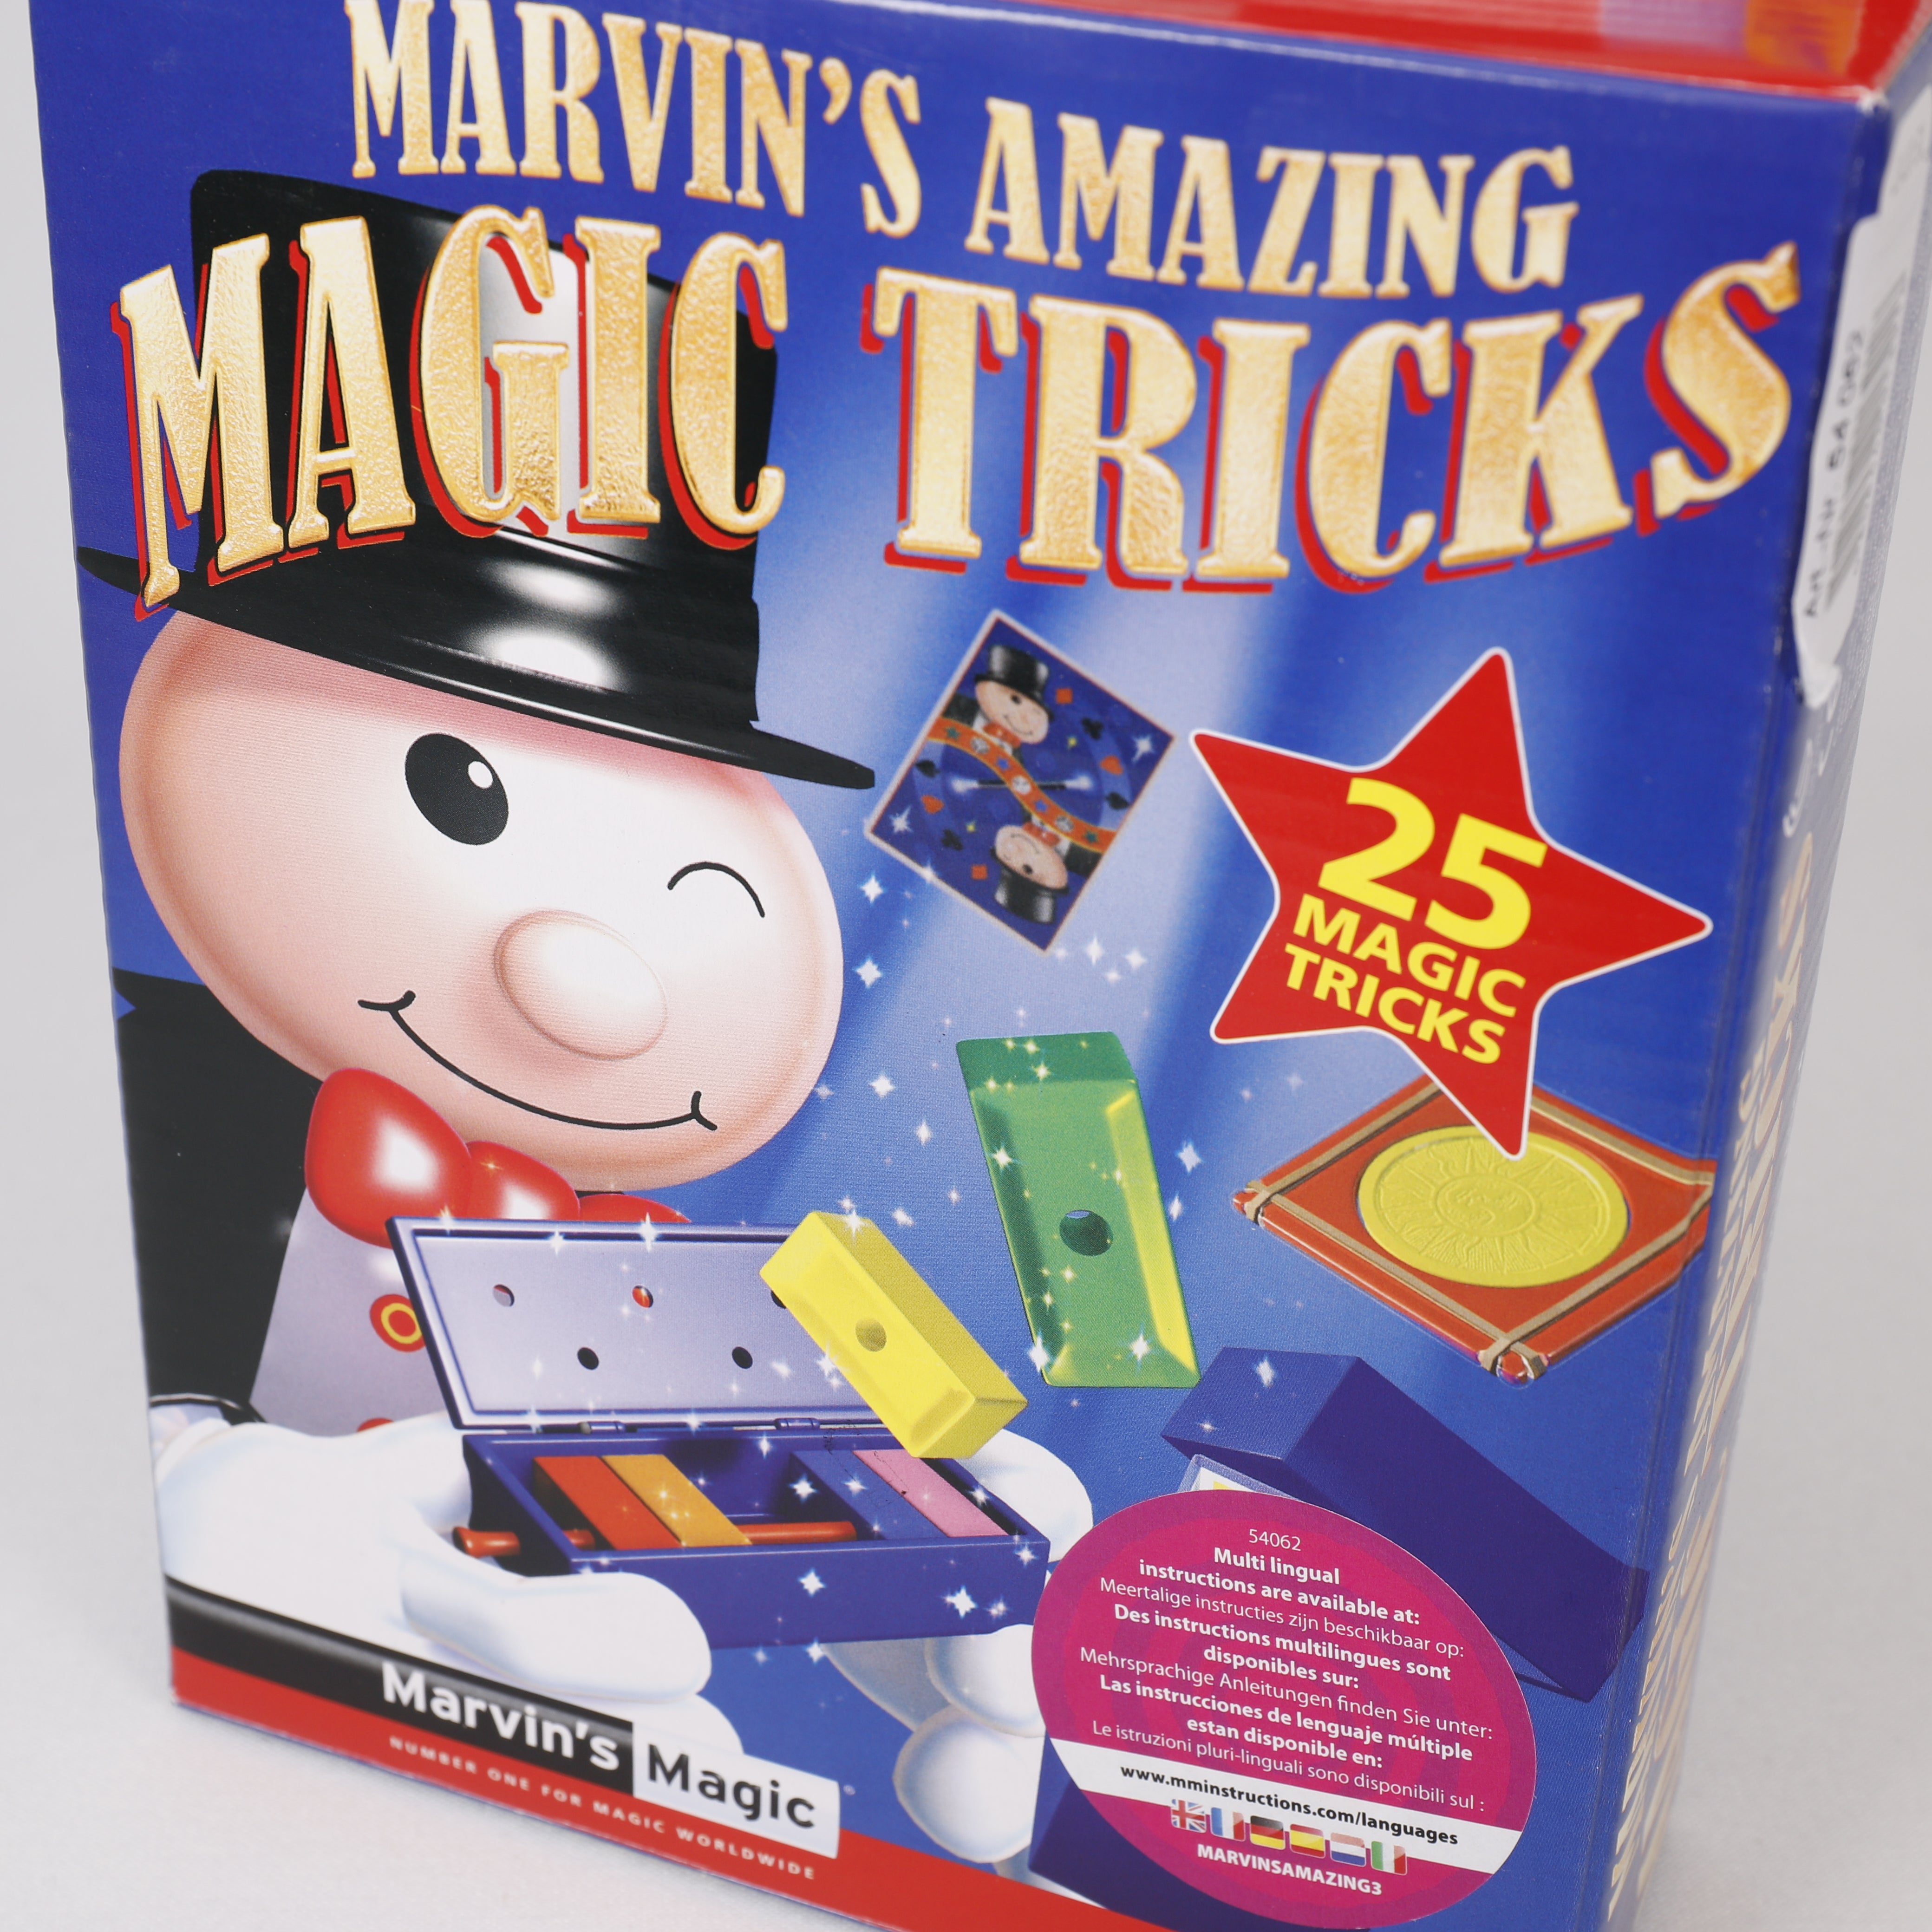 Magic Tricks, 25 Zaubertricks 16 x 23 cm, erstaunliche magische, Marvin's Magic.